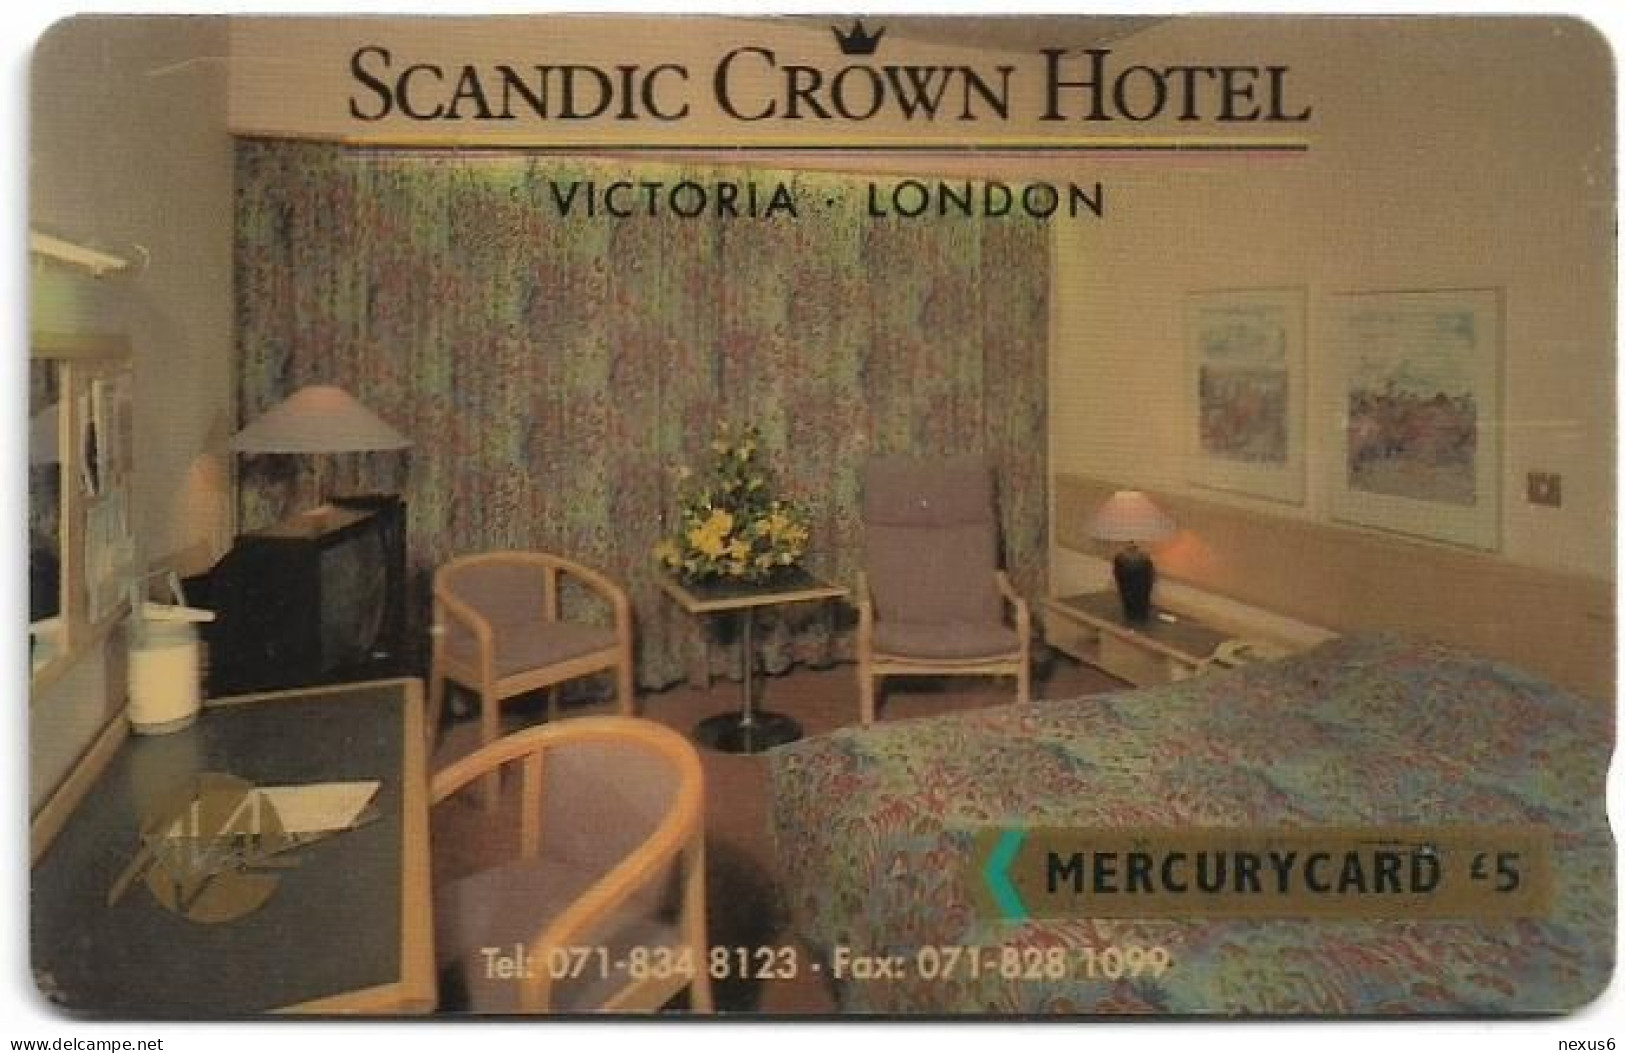 UK (Mercury) - Scandic Hotel (071 834 8123) - 20MERF - MER109 - 5.728ex, Used - [ 4] Mercury Communications & Paytelco